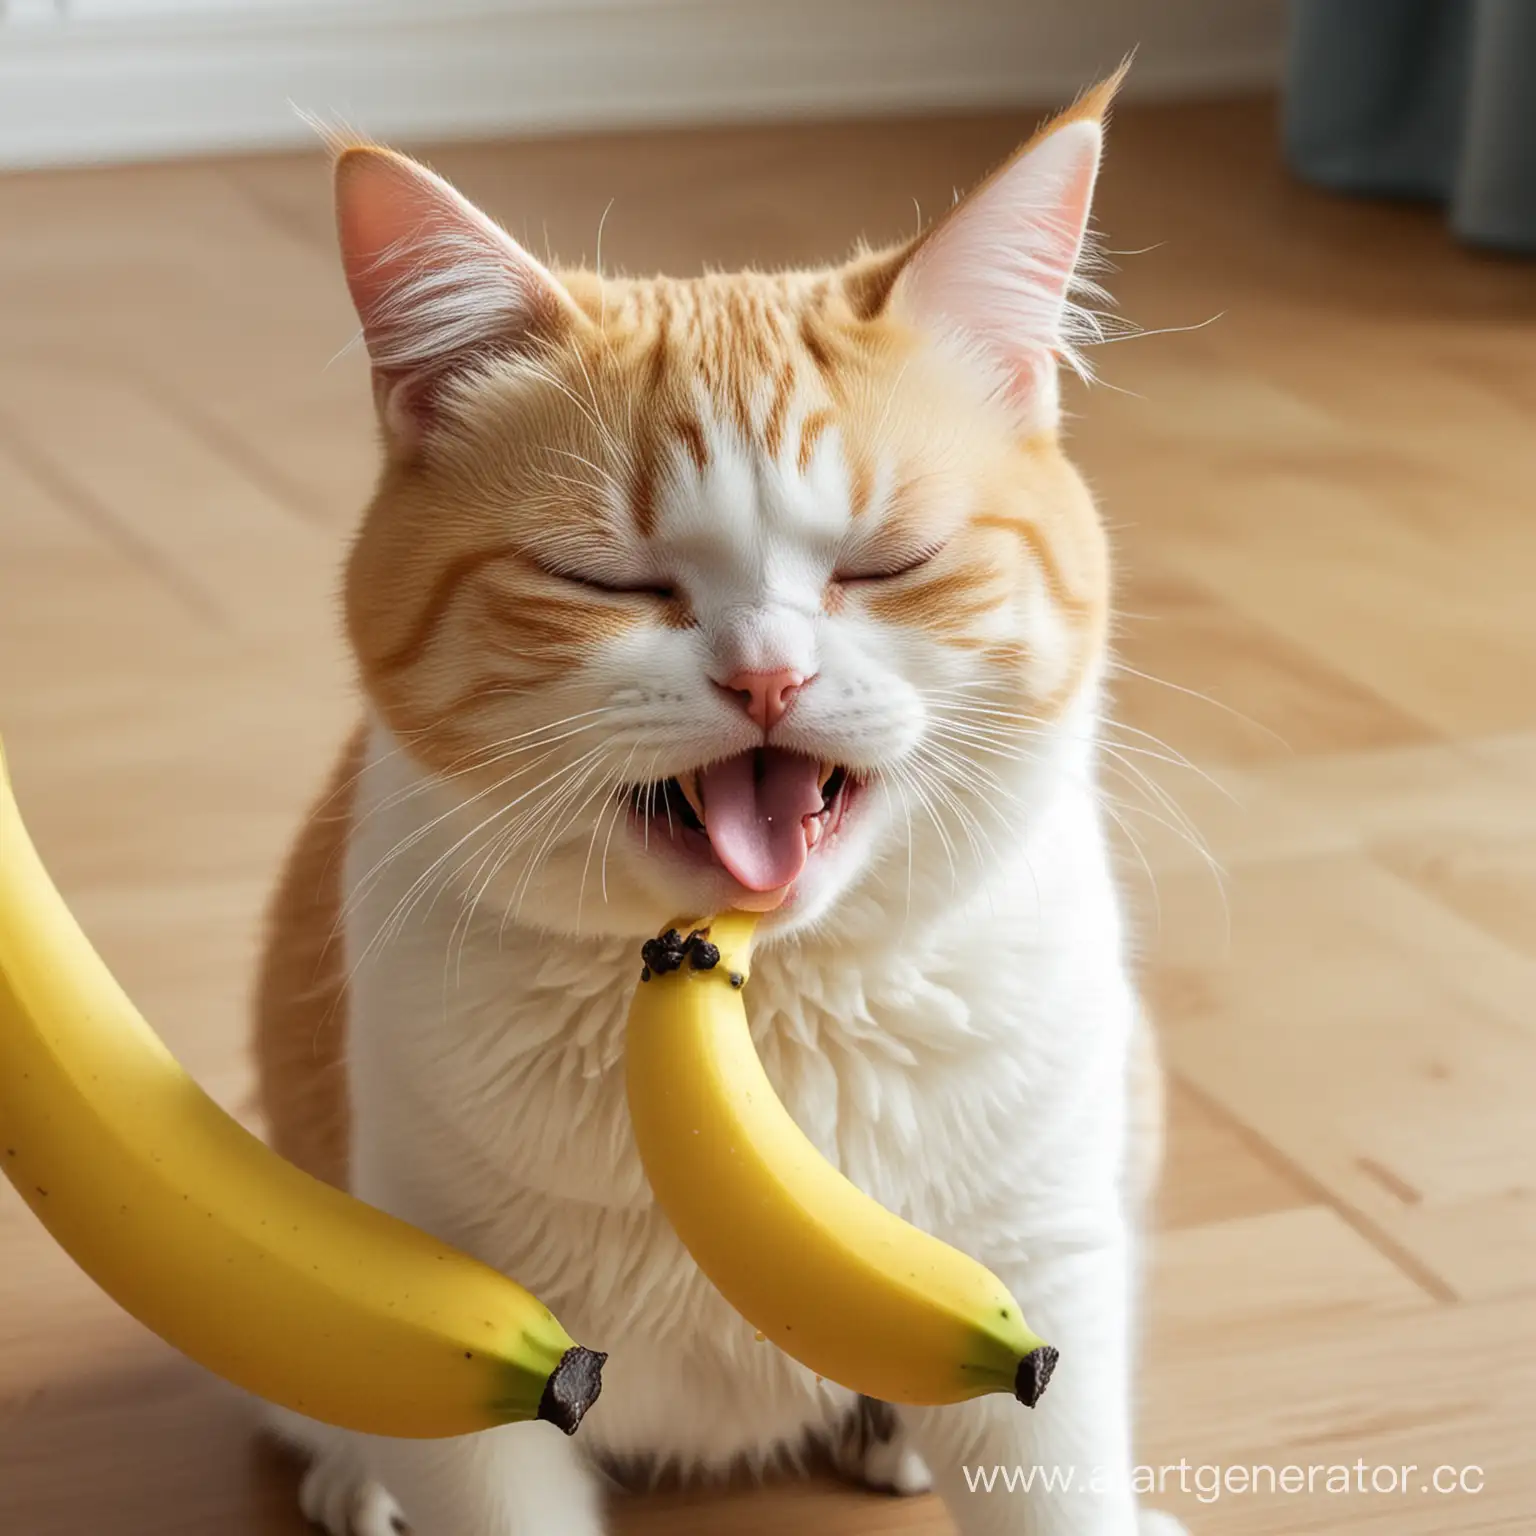 banana cat crying
